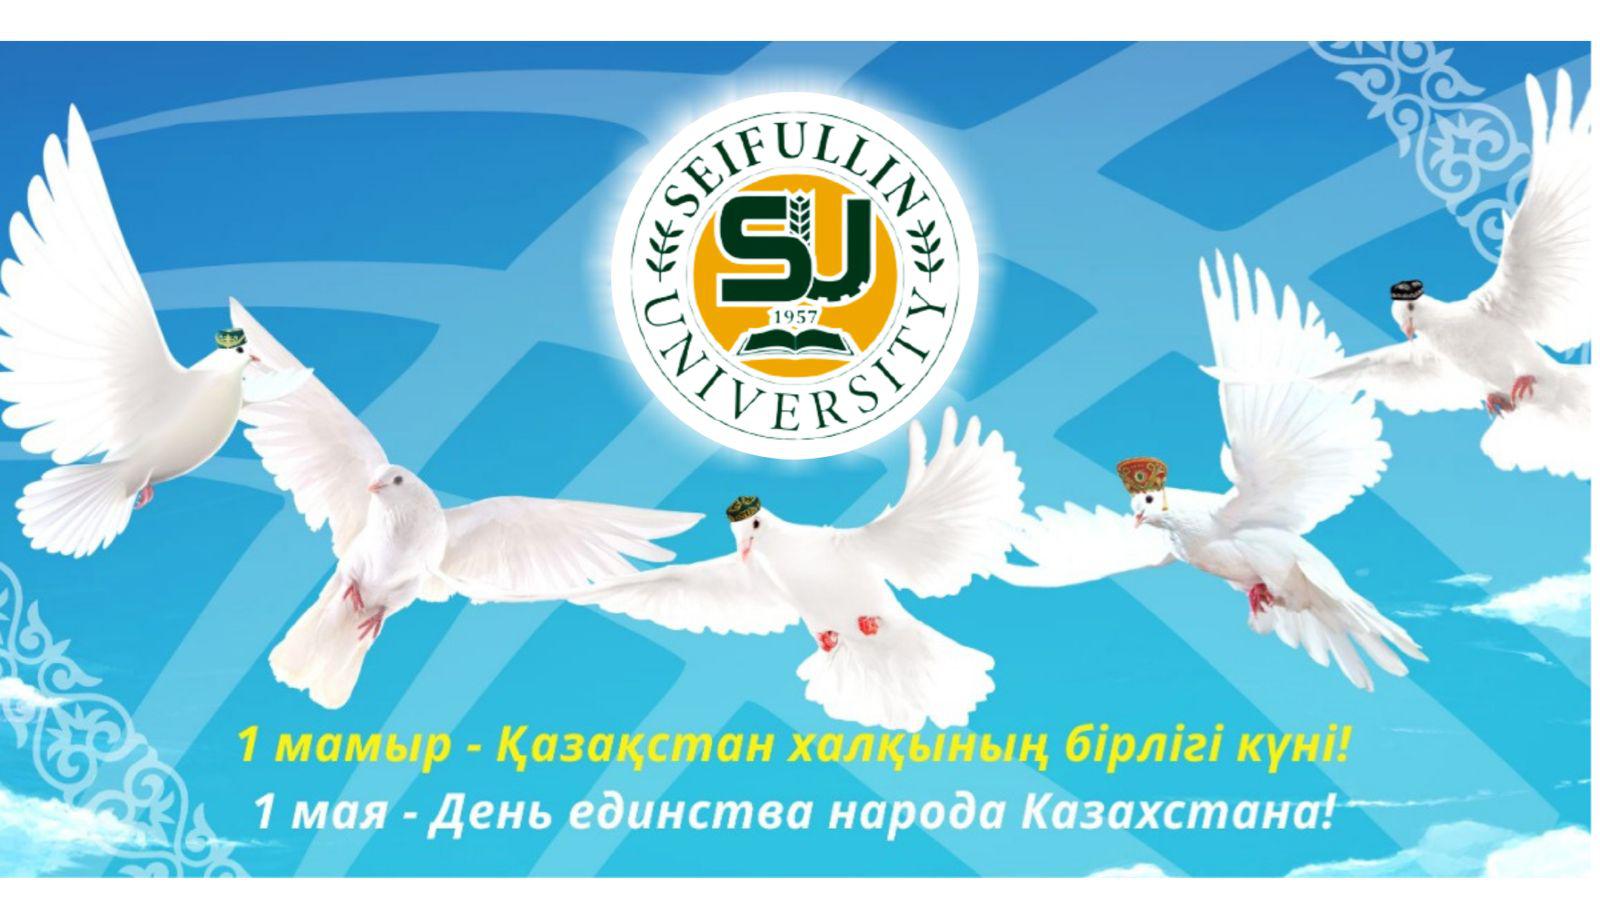 Казахстан день единства народа Казахстана